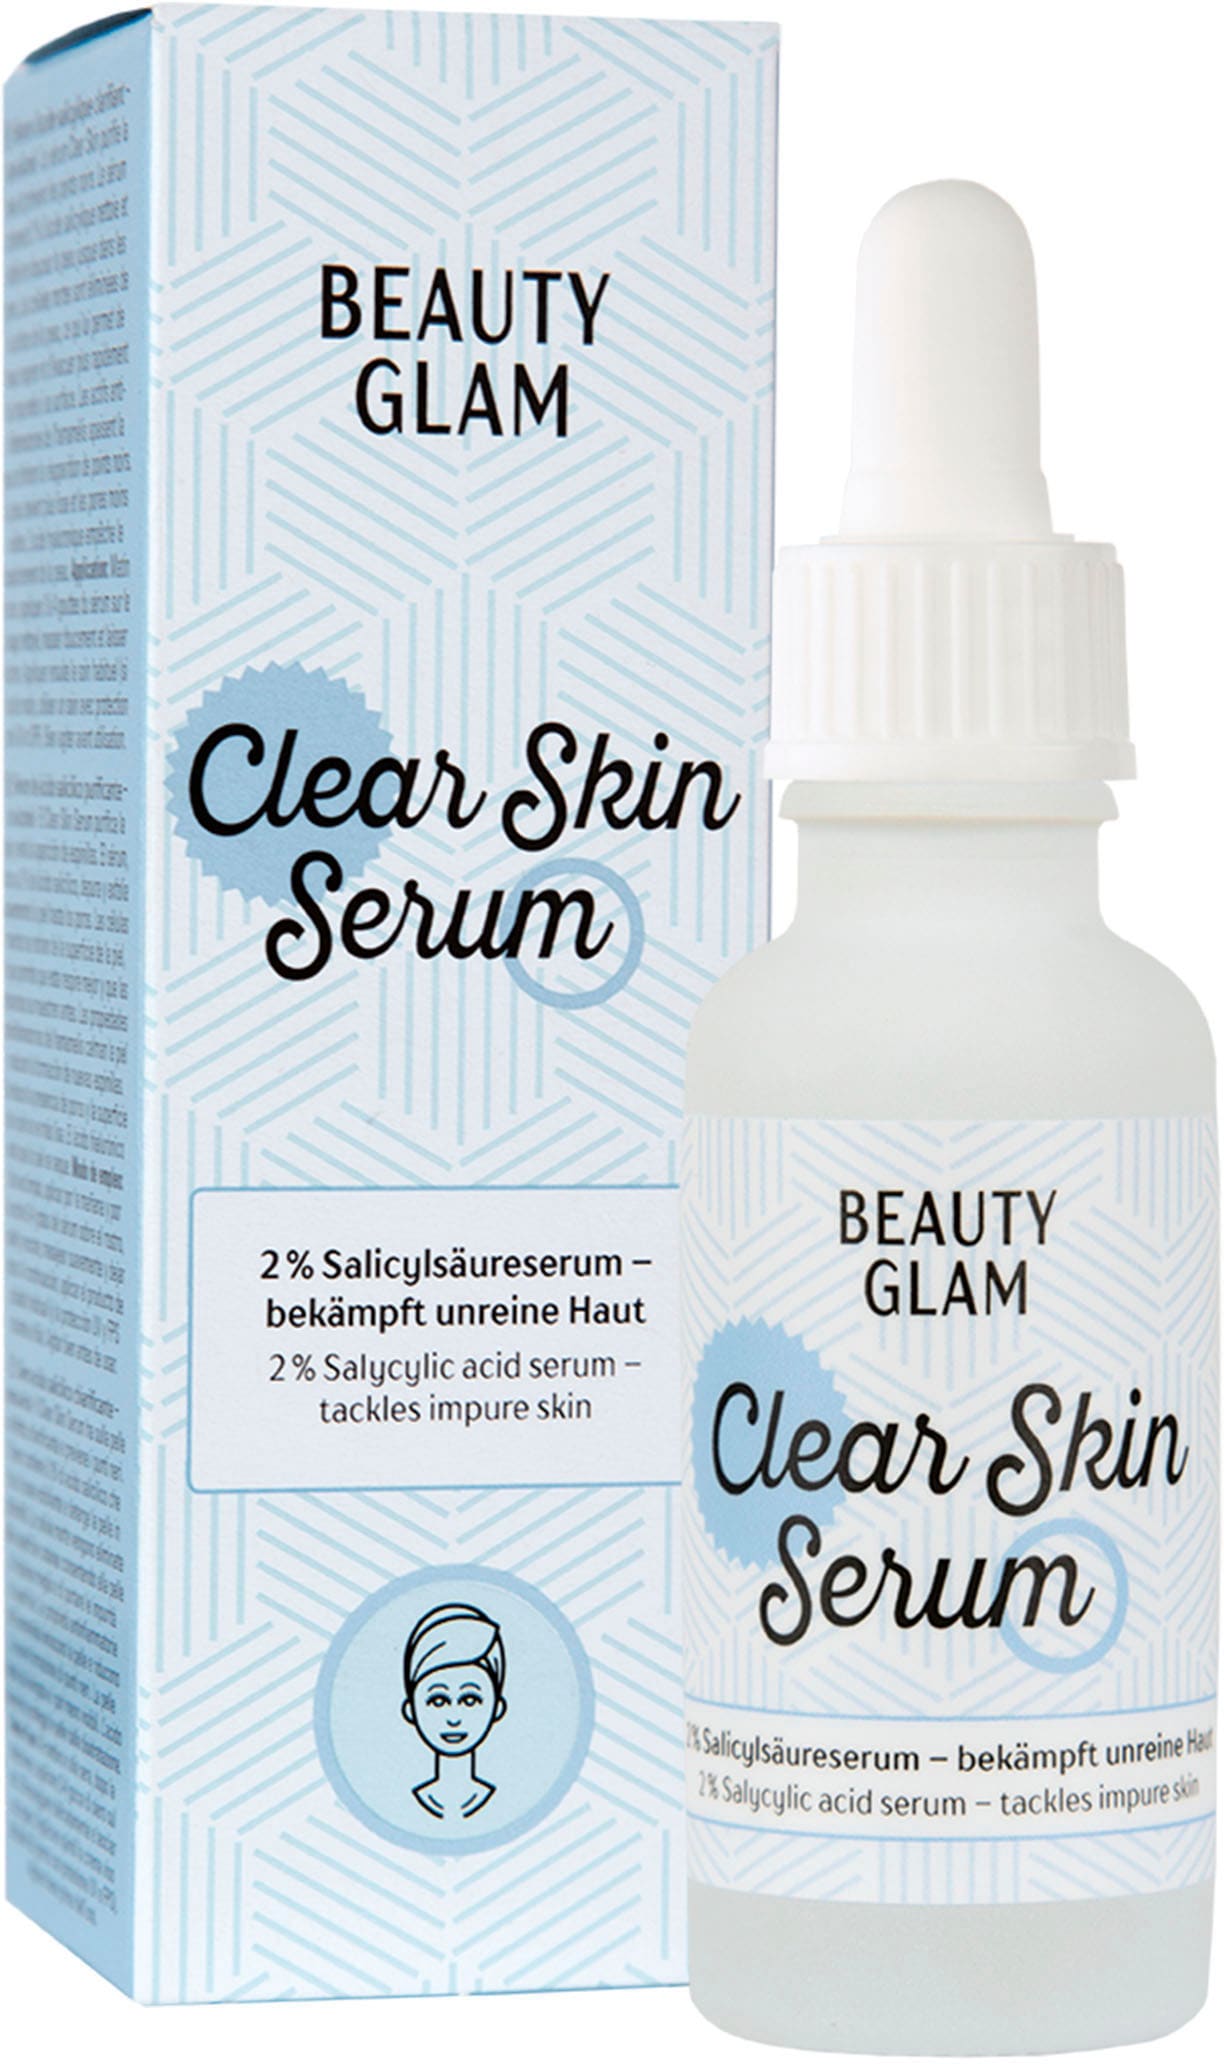 BEAUTY GLAM Gesichtsserum »Beauty Glam Clear Skin Serum« kaufen im OTTO  Online Shop